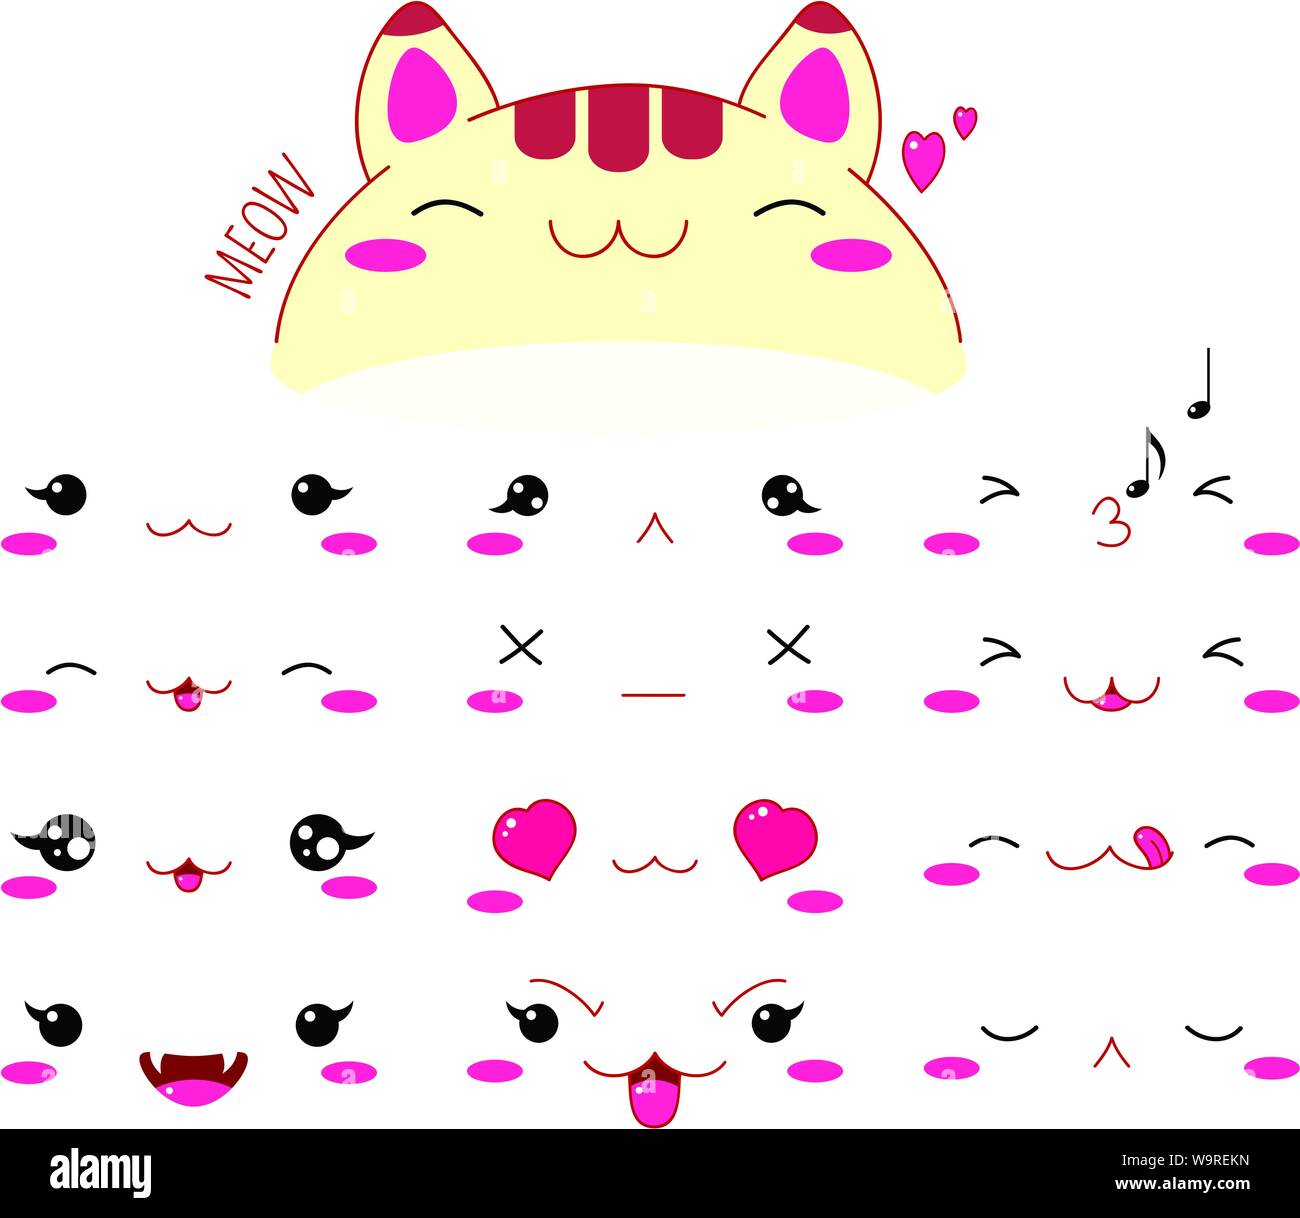 Cute funny cats définir diverses émotions. Style Kawaii émoticone avec joues roses et des clins d'yeux. Spe8 Illustration de Vecteur